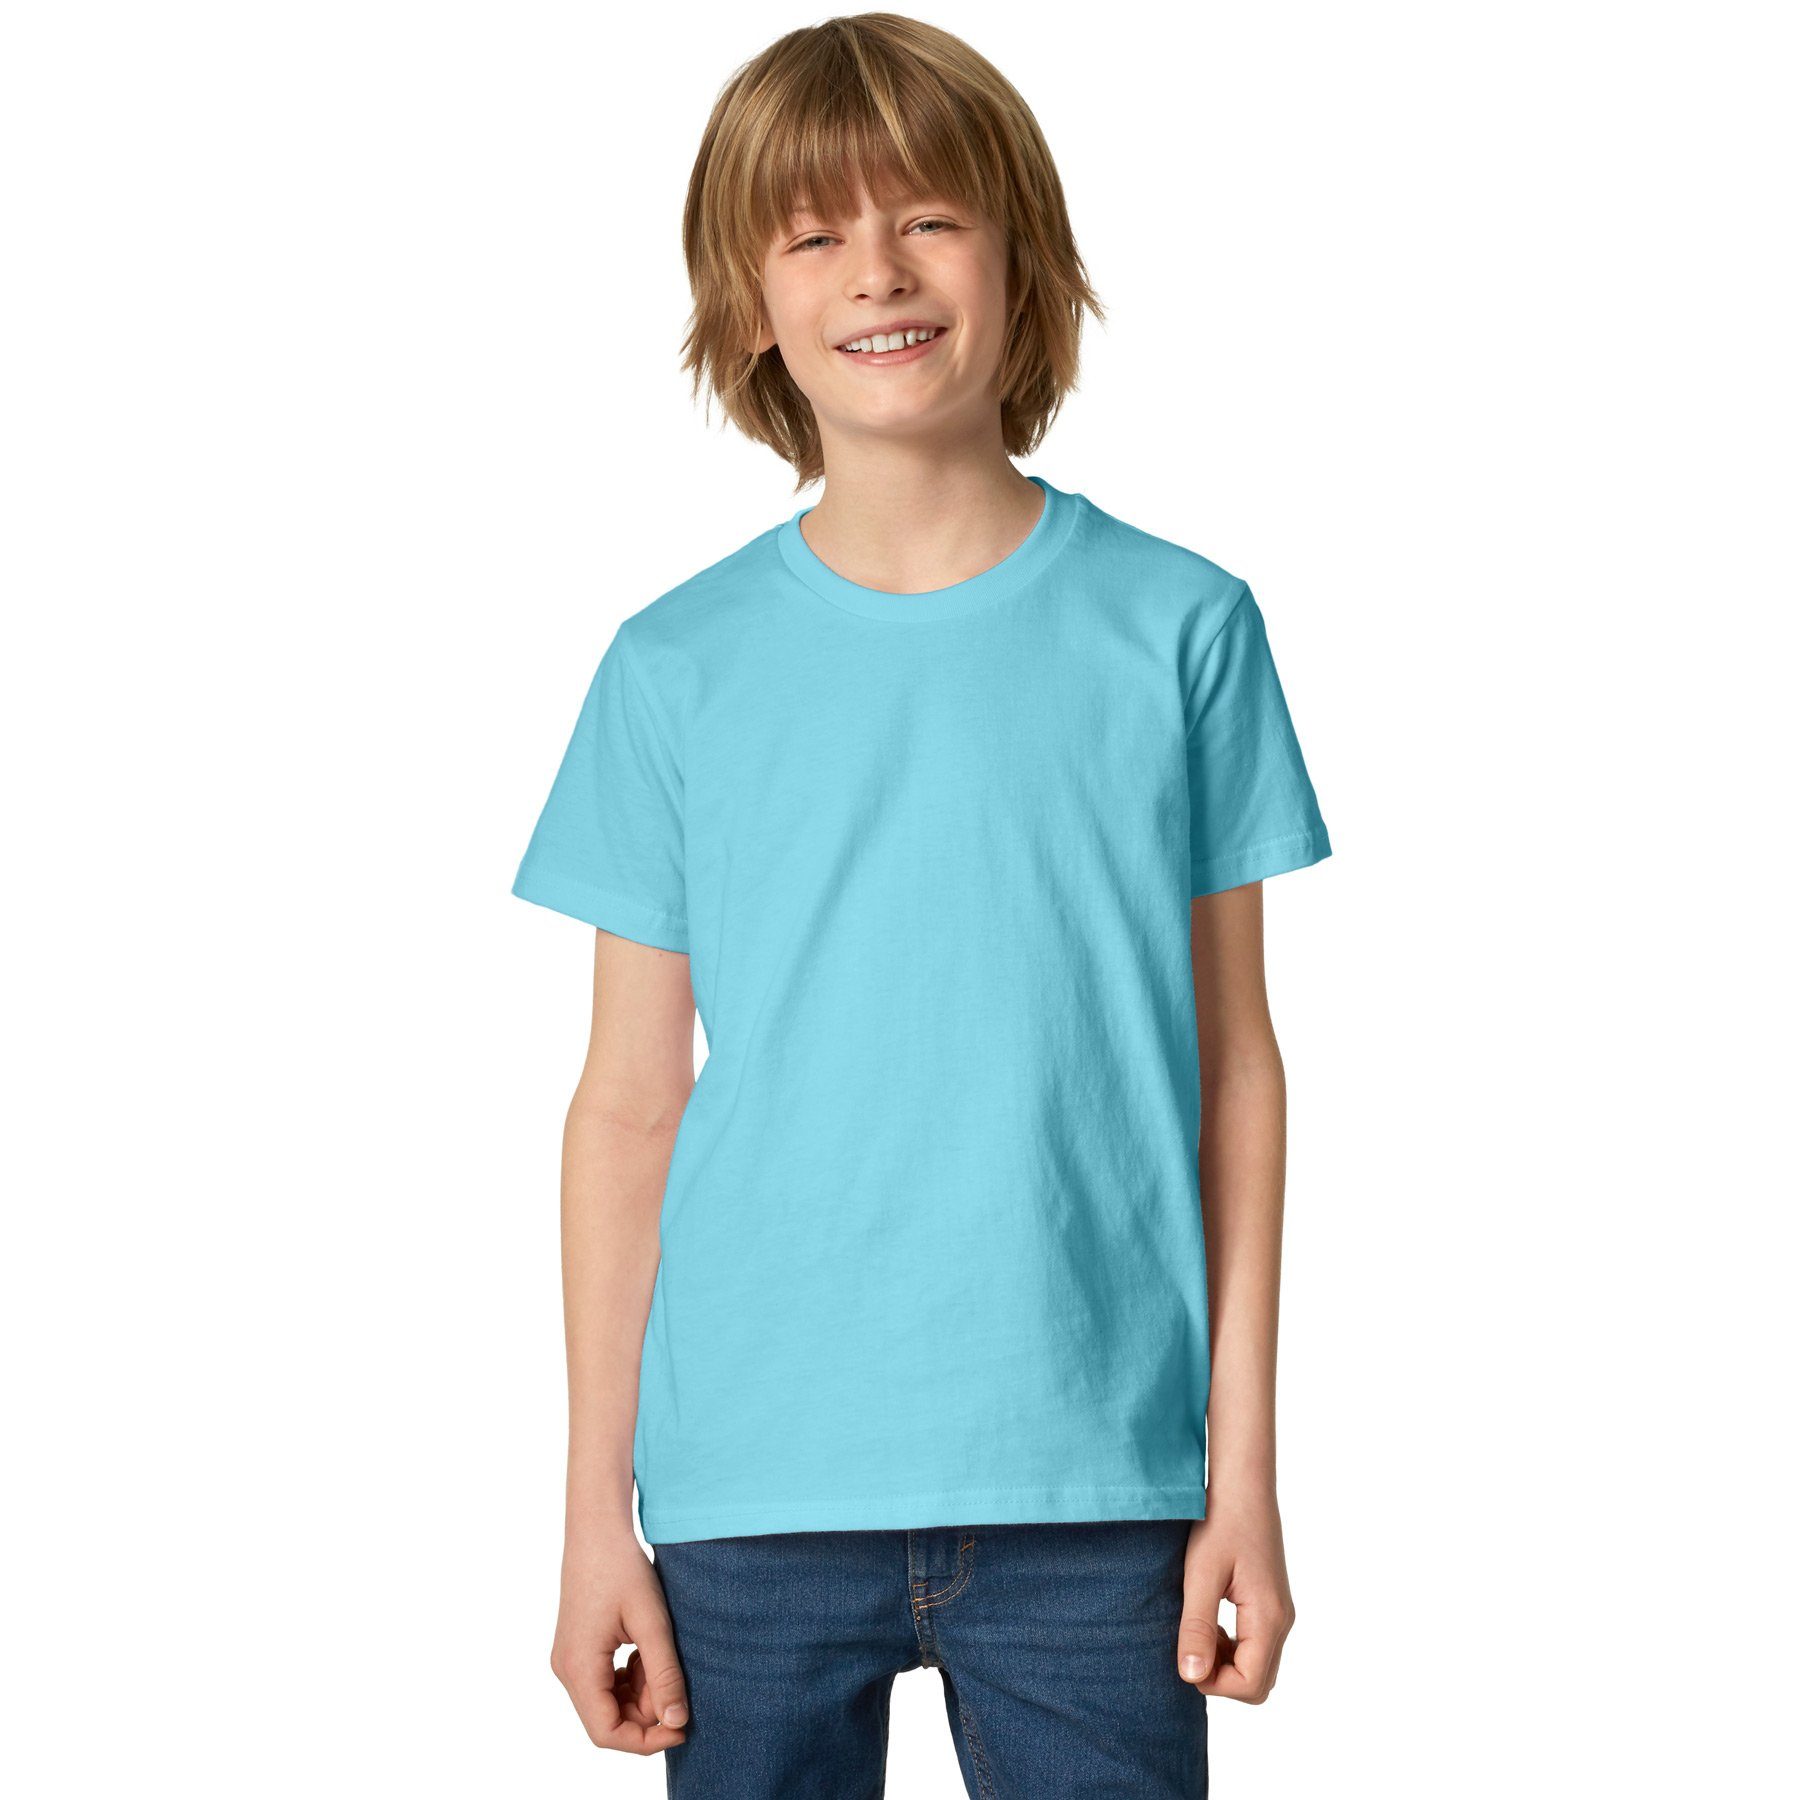 dressforfun T-Shirt T-Shirt Korientalisch Rundhals hellblau